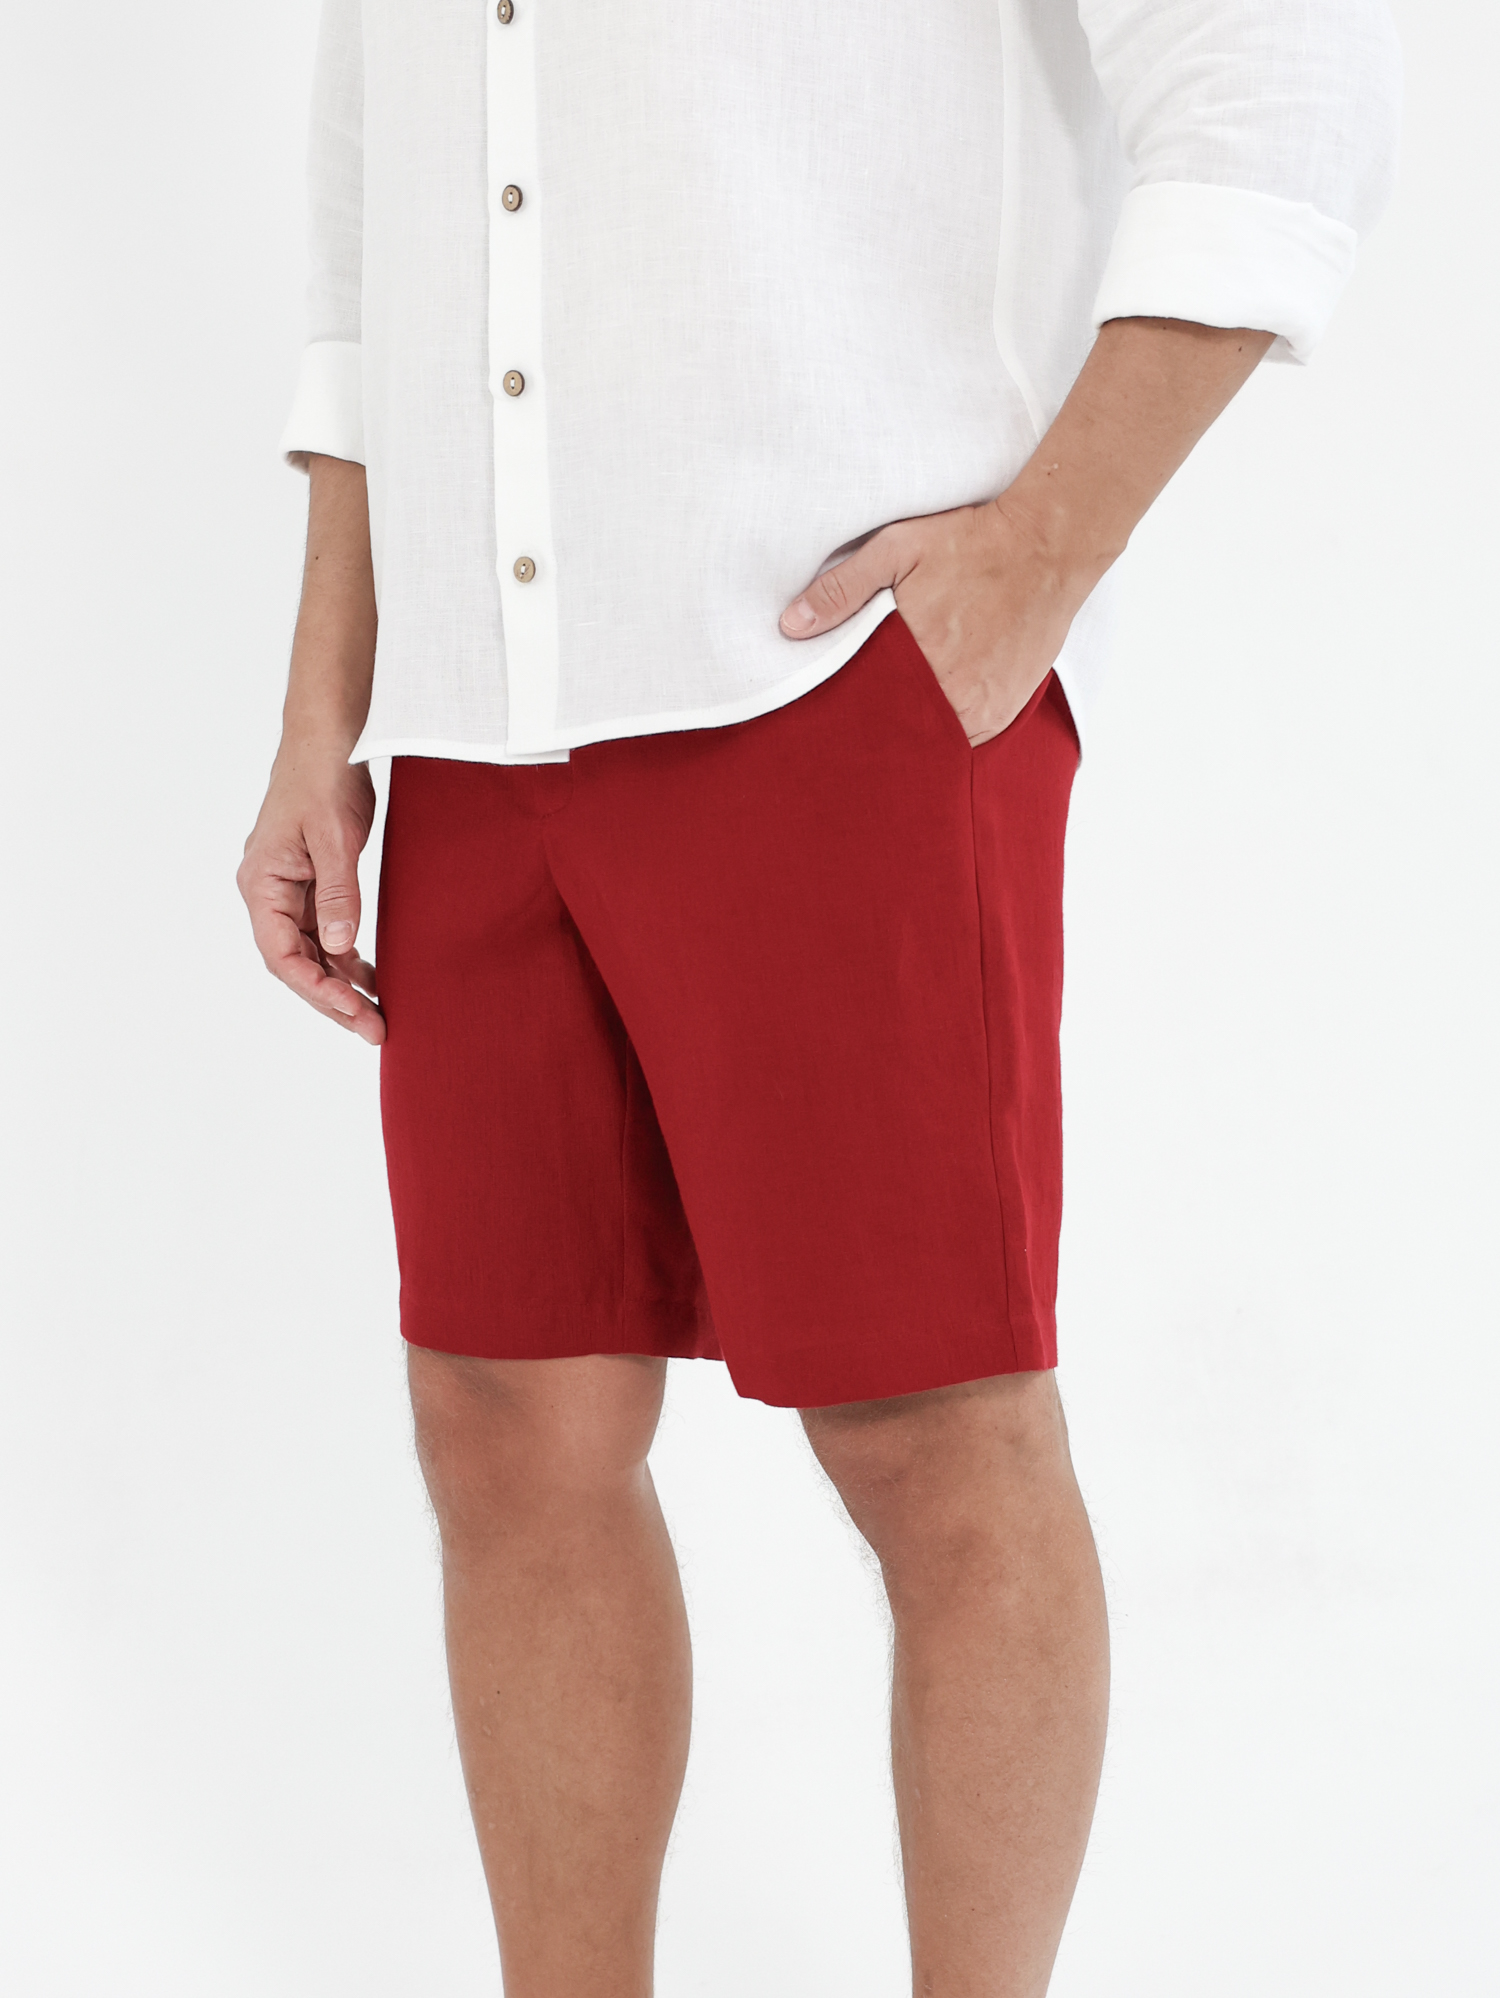 Men's summer shorts